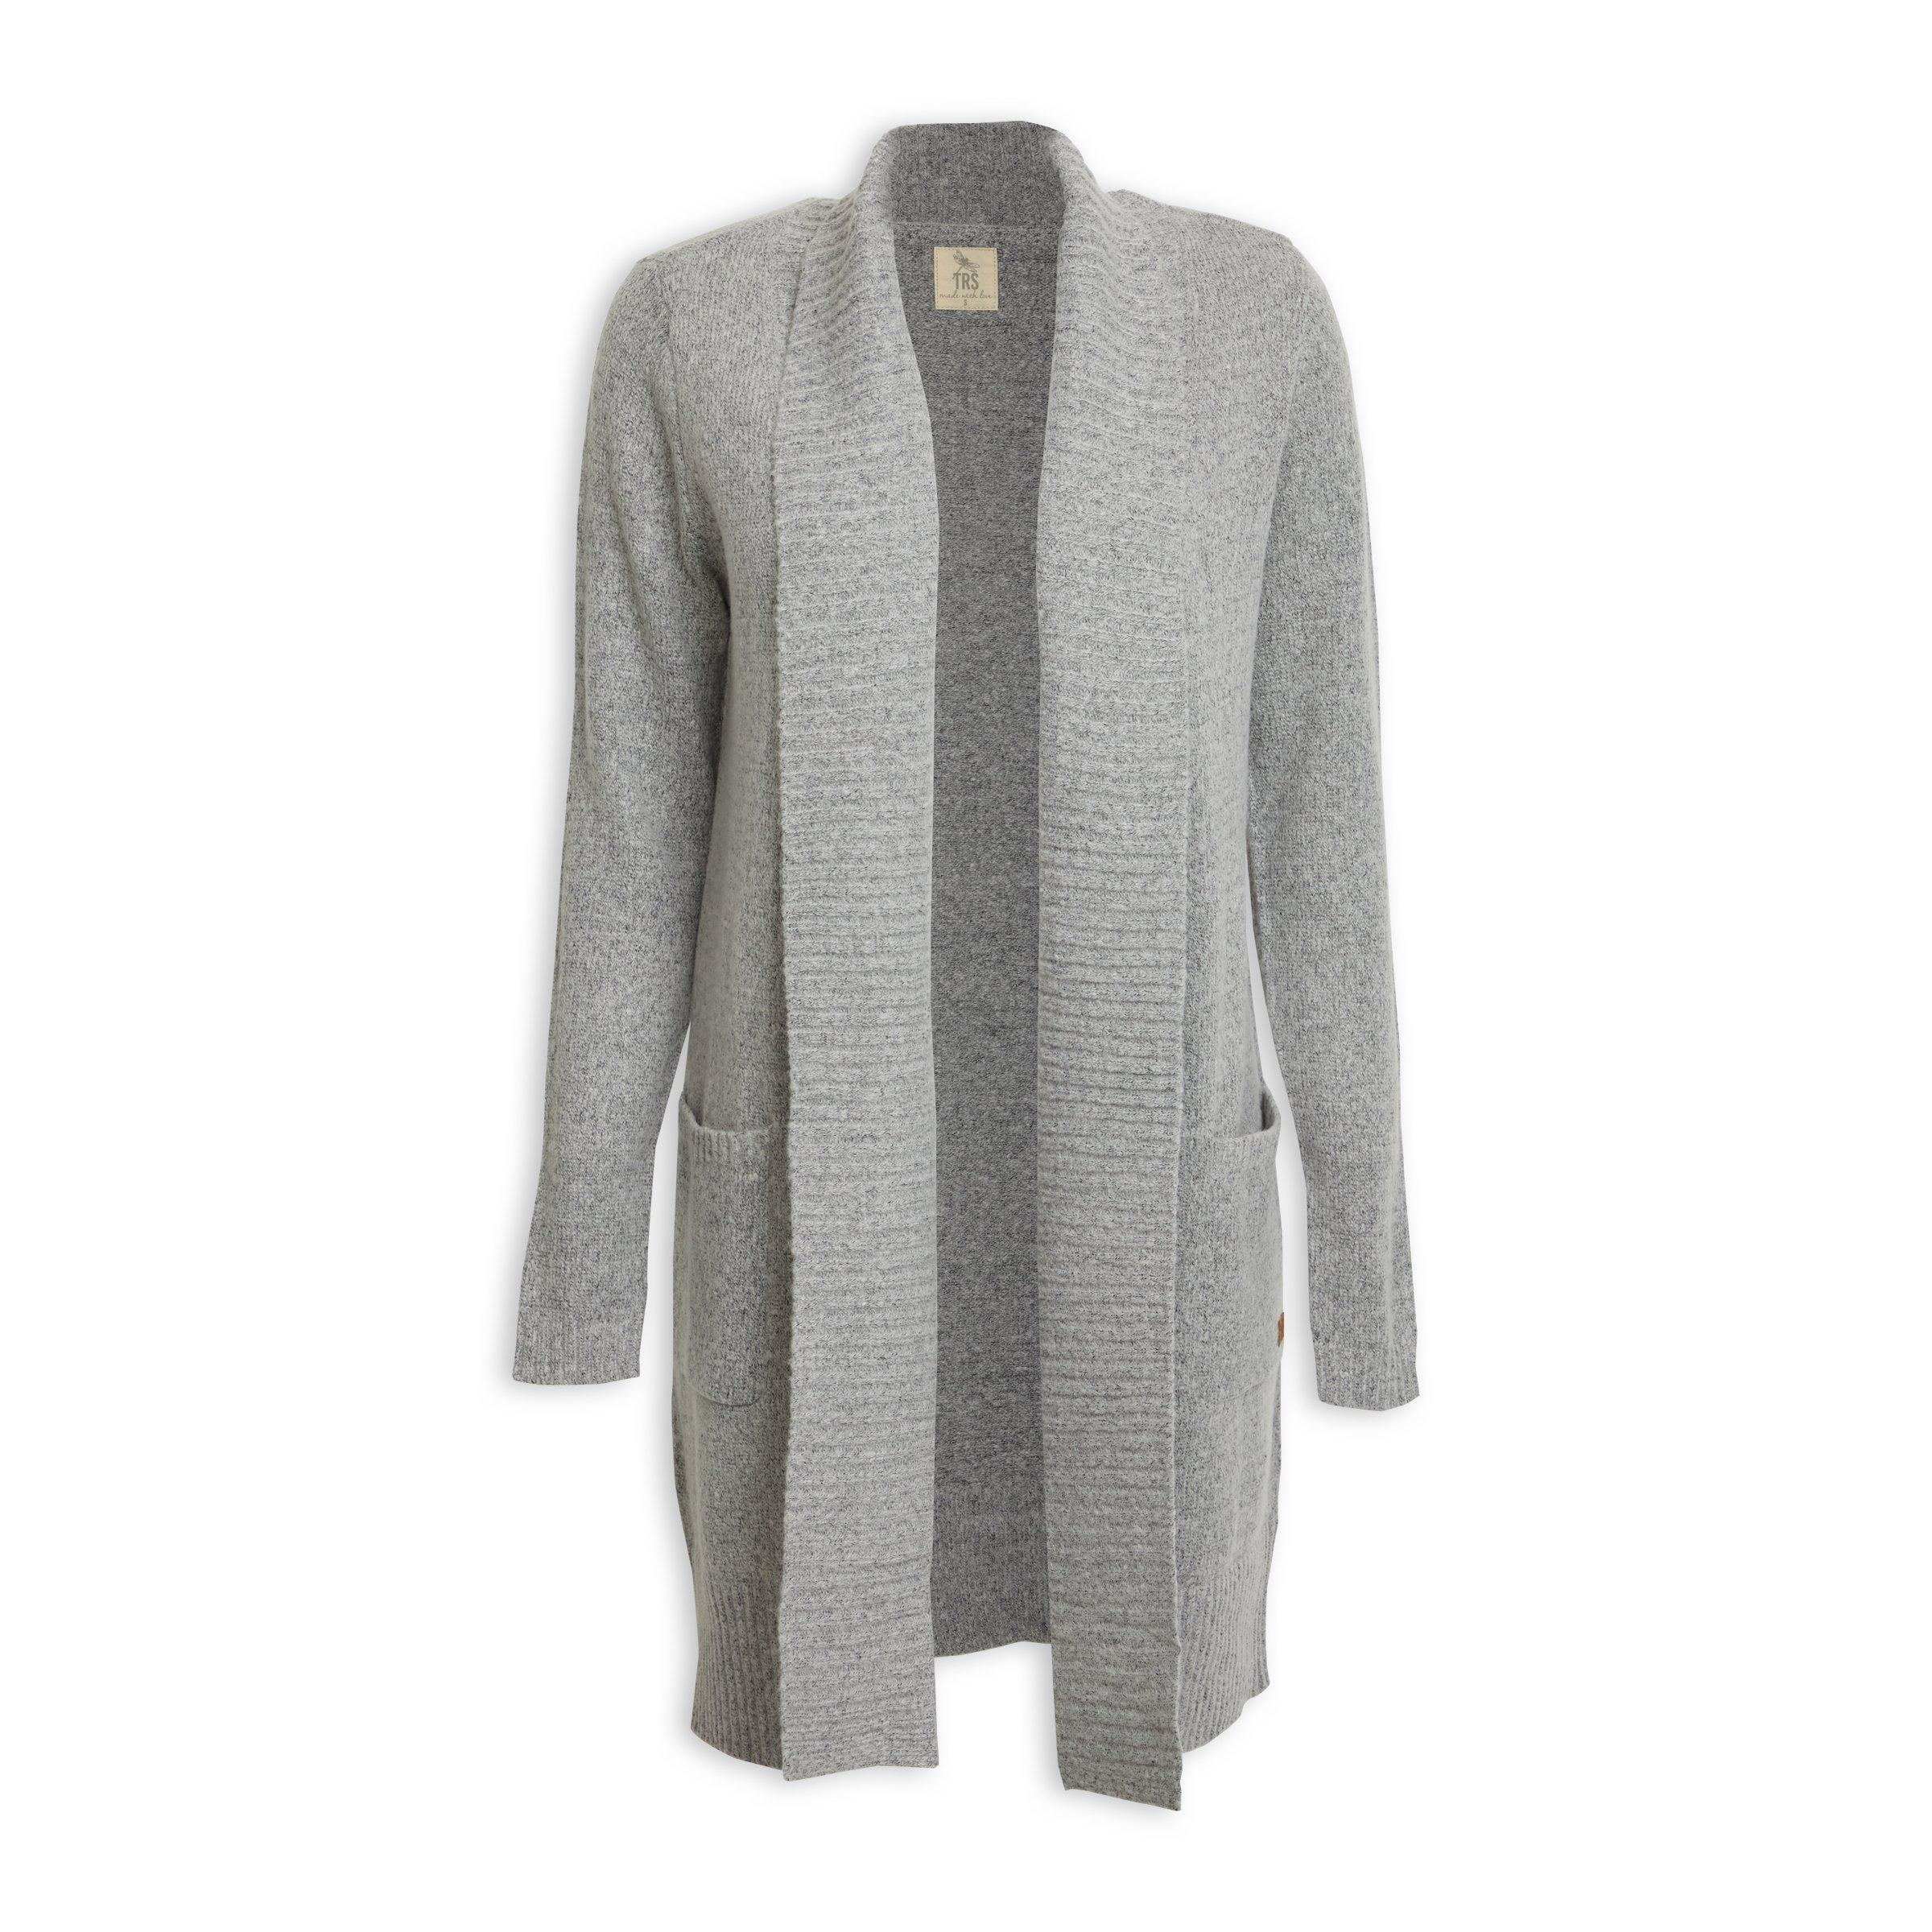 Buy TRS Grey Long Sleeve Cardigan Online | Truworths